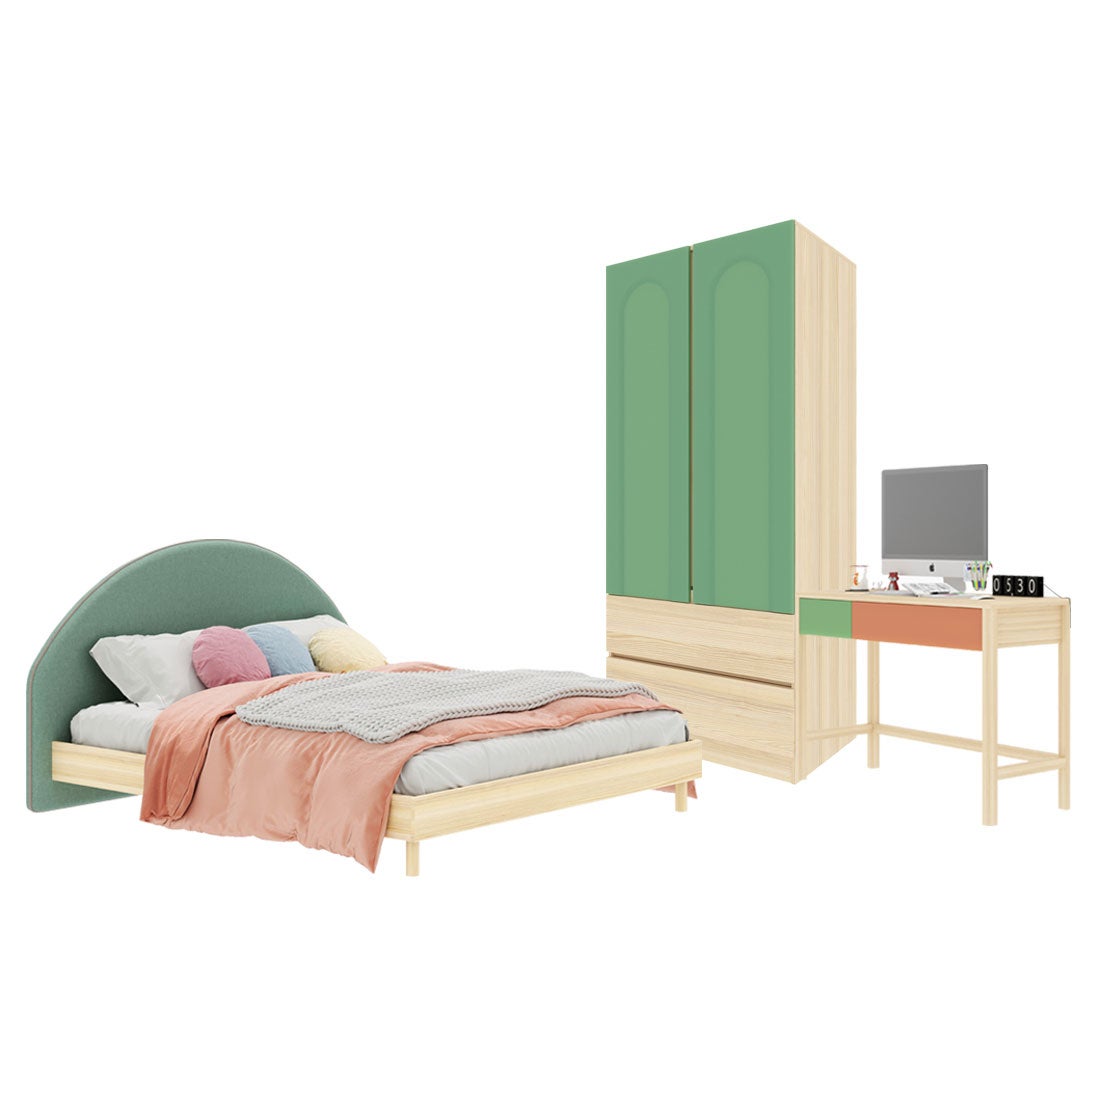 ชุดห้องนอน ขนาด 6 ฟุต-เบาะเขียว รุ่น Bingsoo & ตู้เสื้อผ้าลิ้นชัก 90 ซม. สีเขียว01